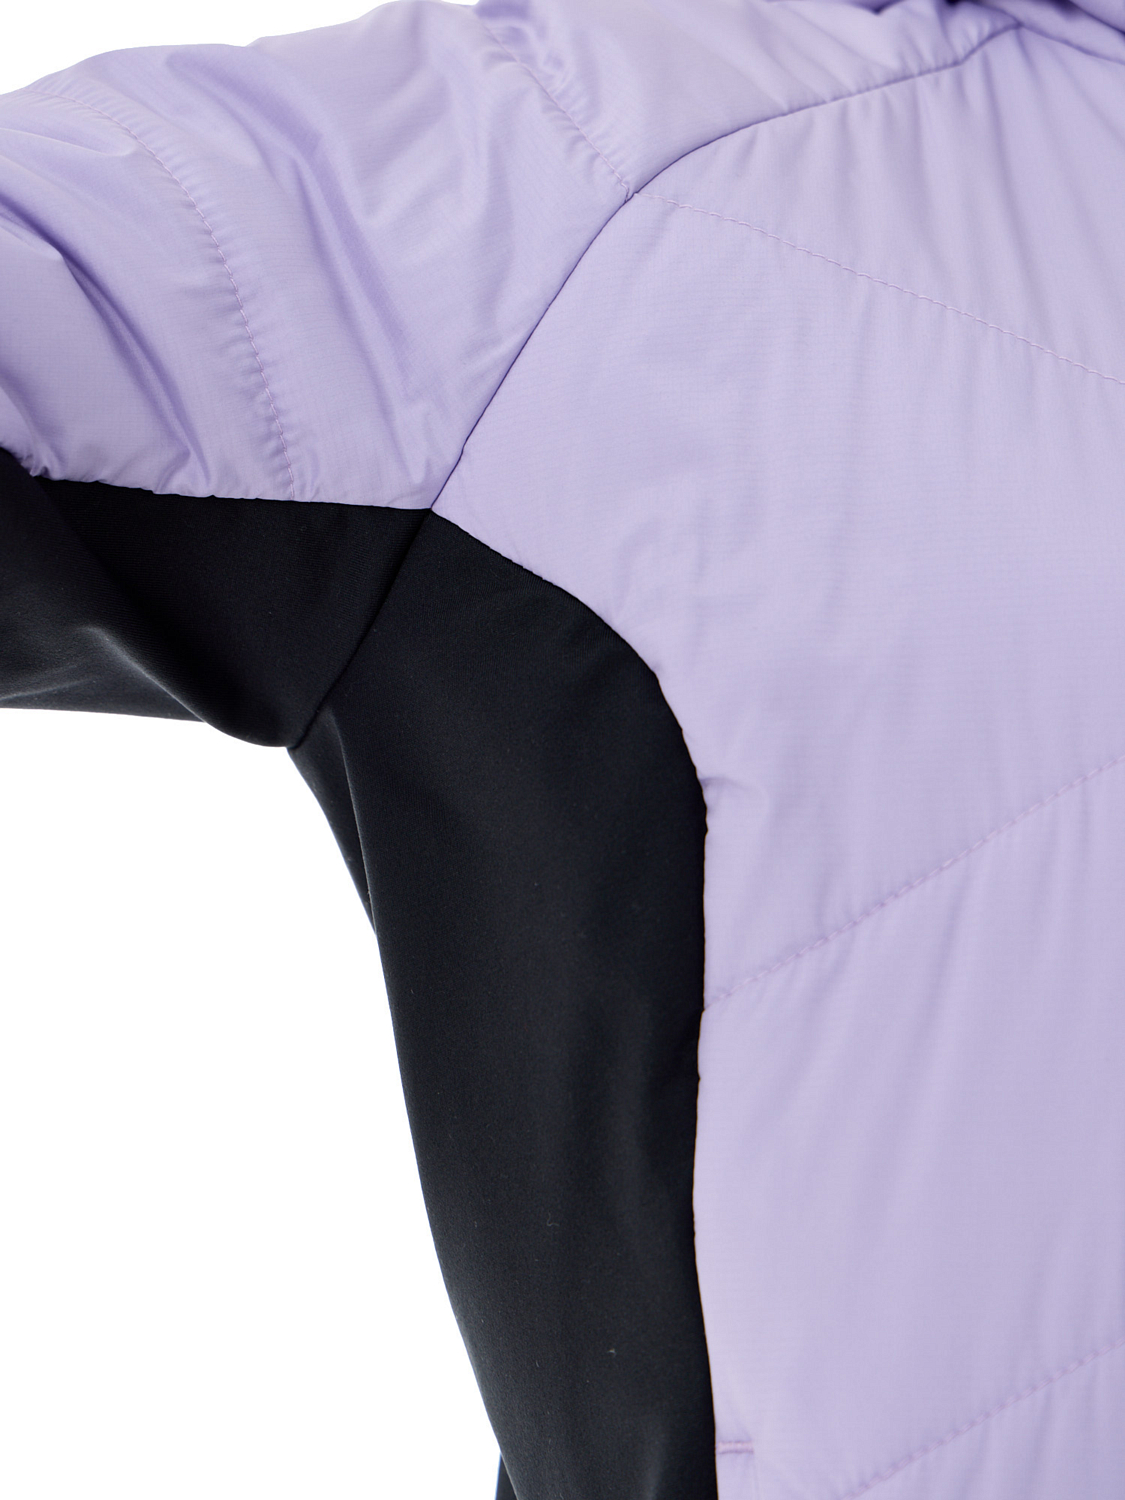 Куртка беговая Nordski Hybrid Warm W Lavender/Black